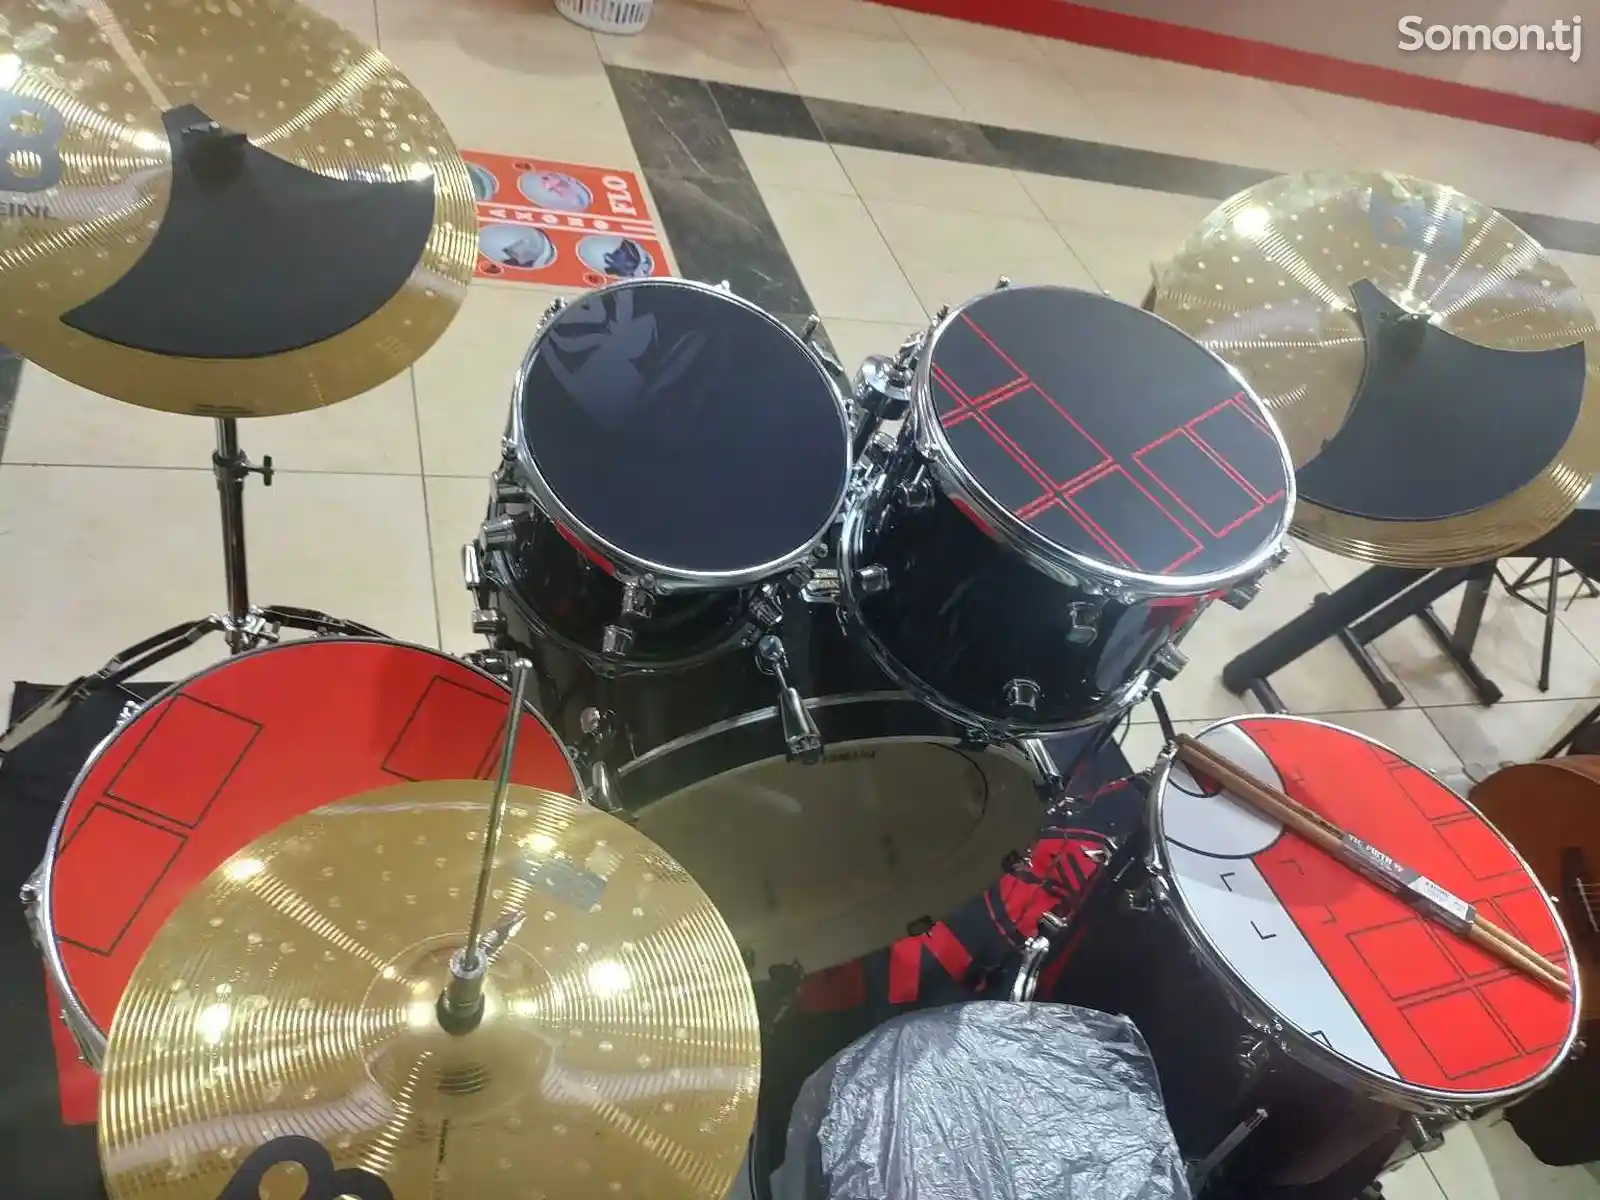 Профессиональный барабан Yamaha-2